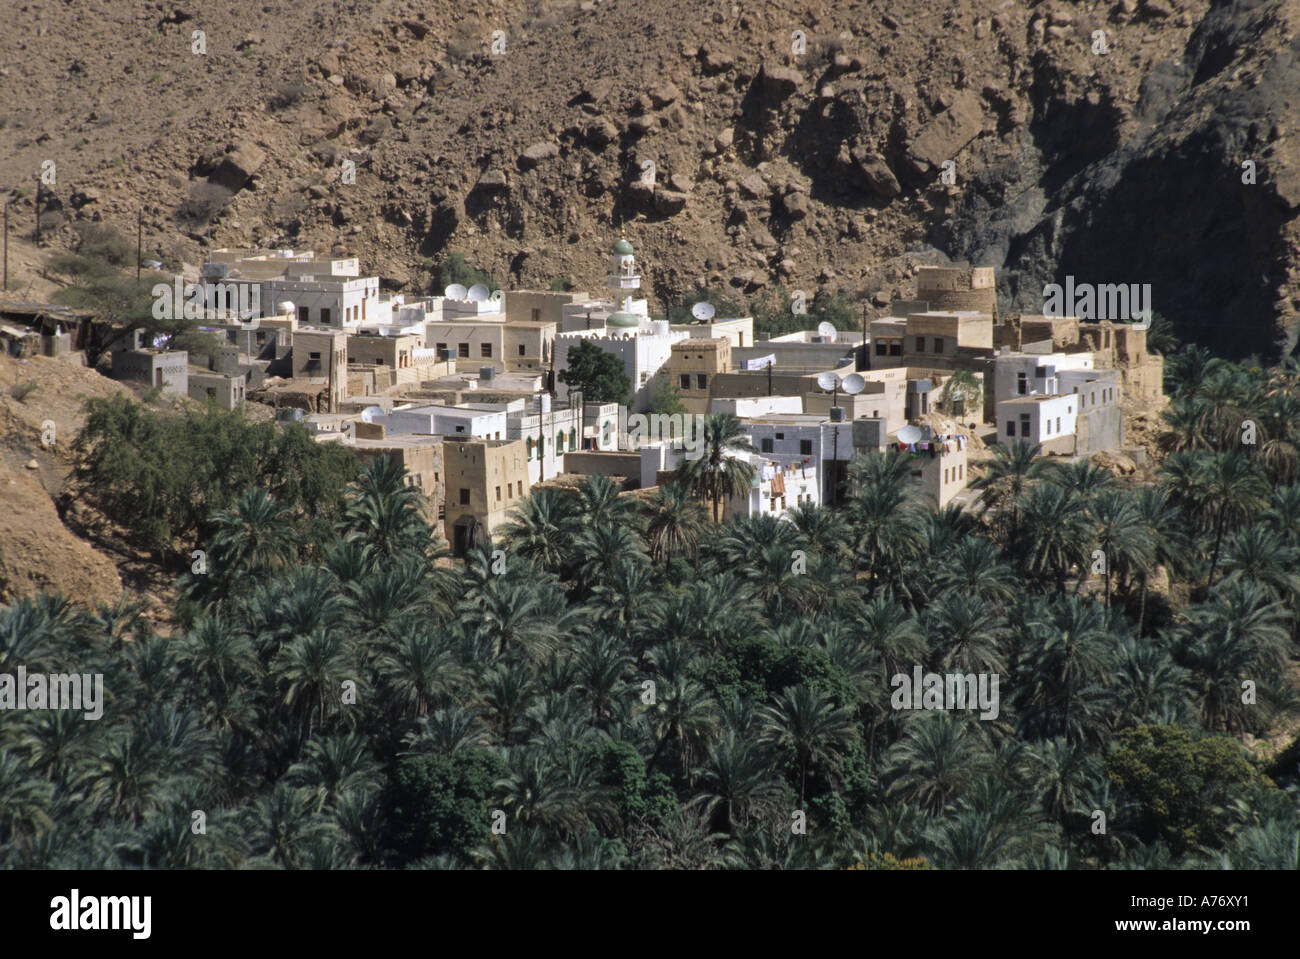 Wadi Tiwi Date Palms and Village, Oman Stock Photo